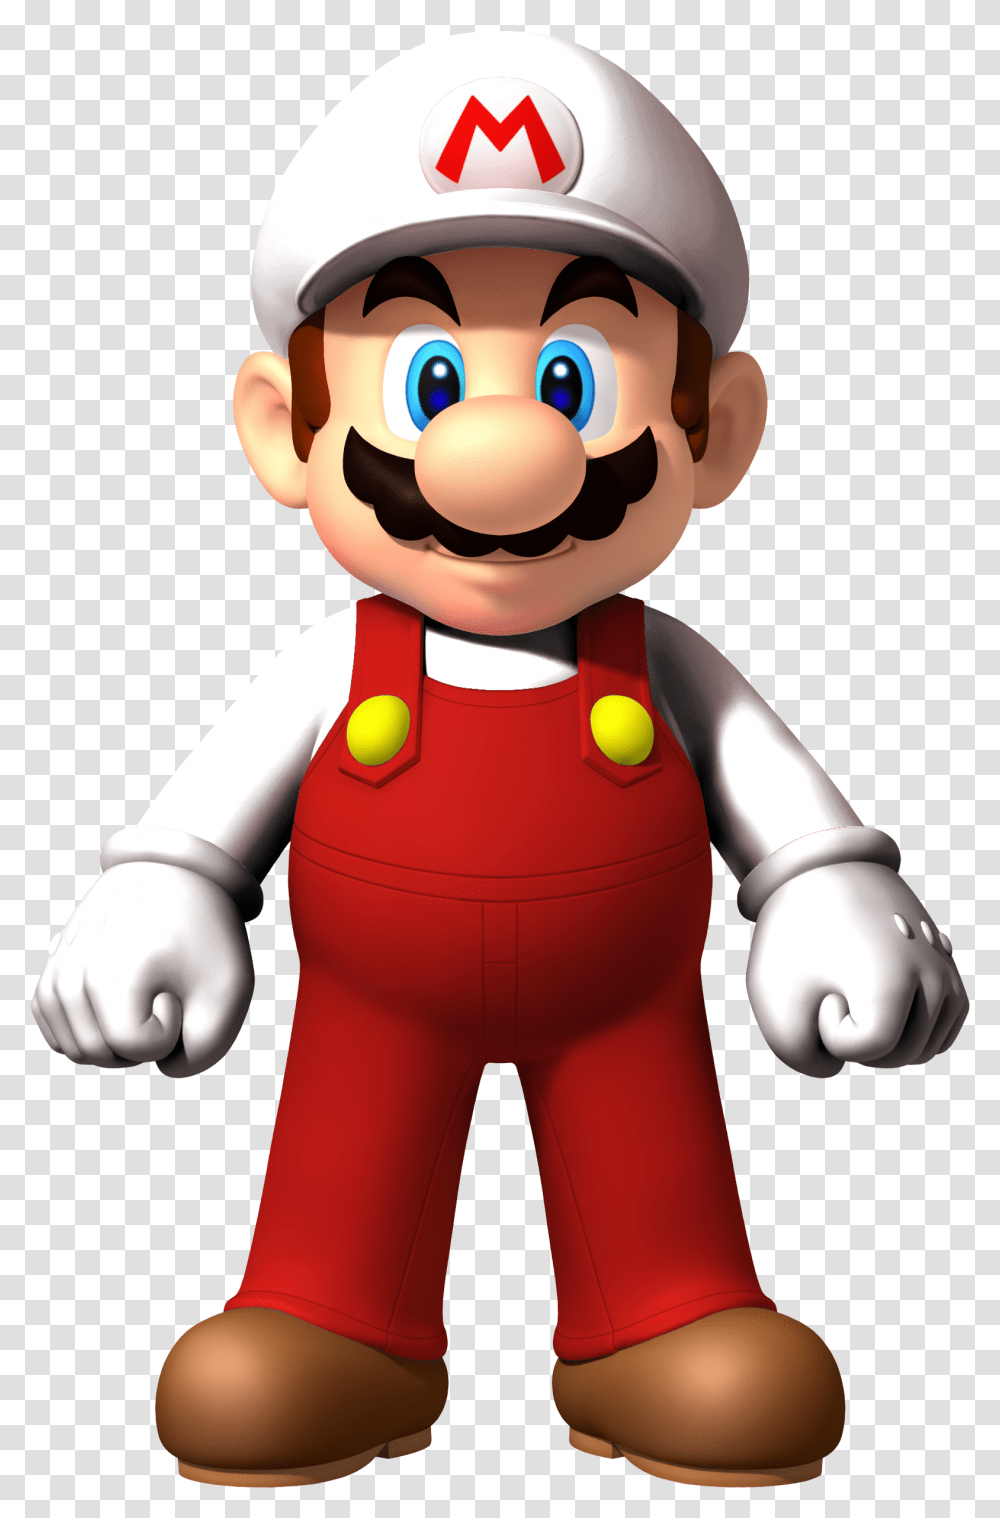 Fire Mario Super Bros New Super Mario Bros Wii Mario, Toy, Figurine, Mascot Transparent Png